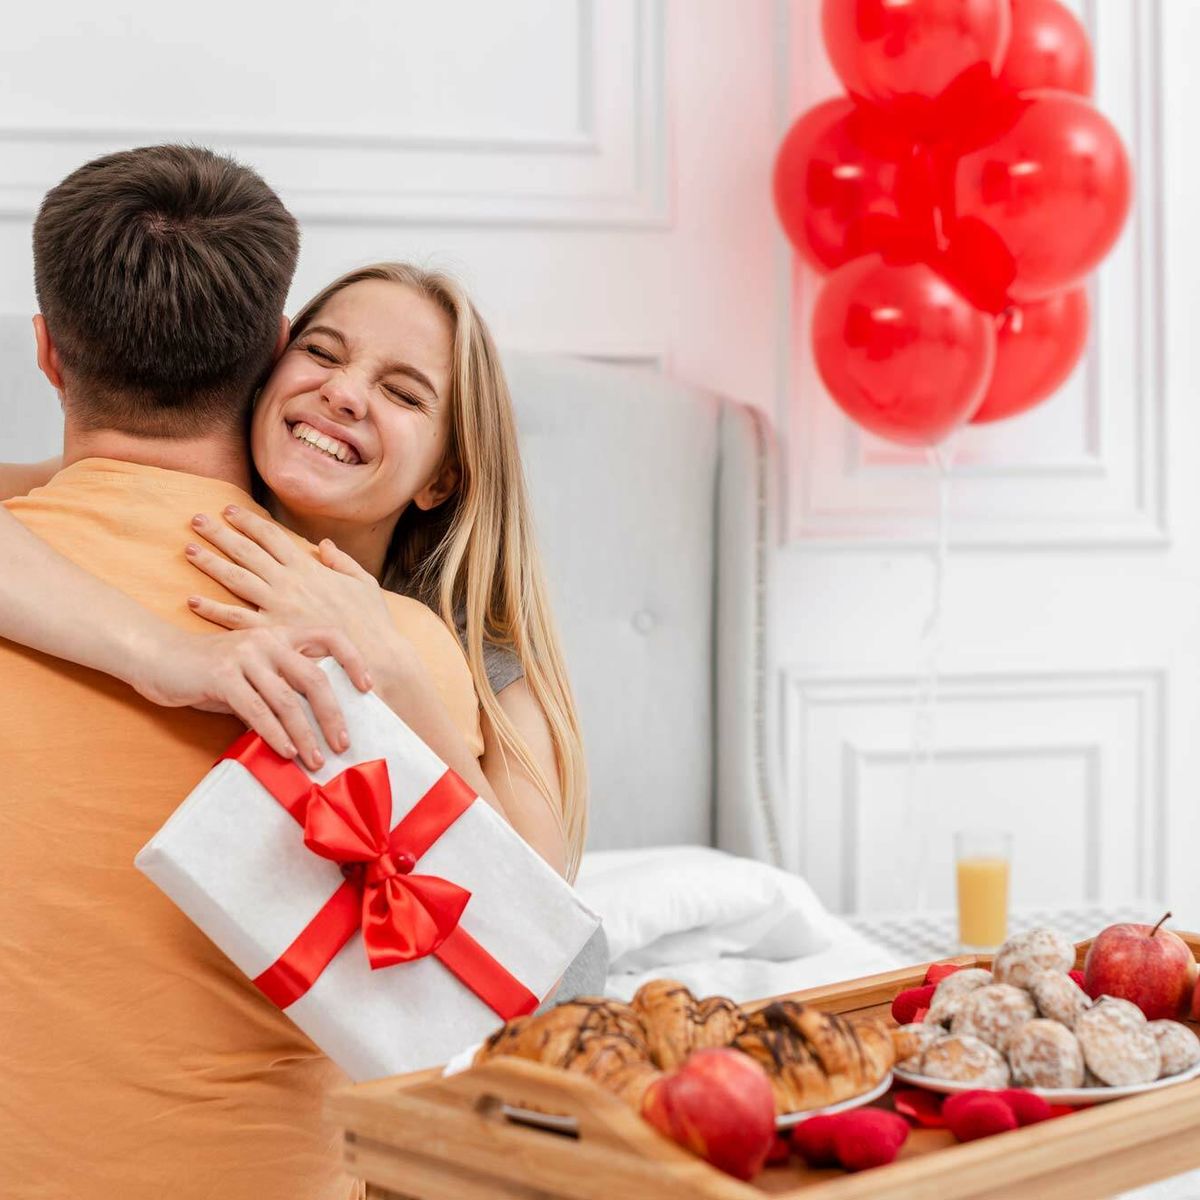 Regalos personalizados de San Valentín para enamorar a tu pareja